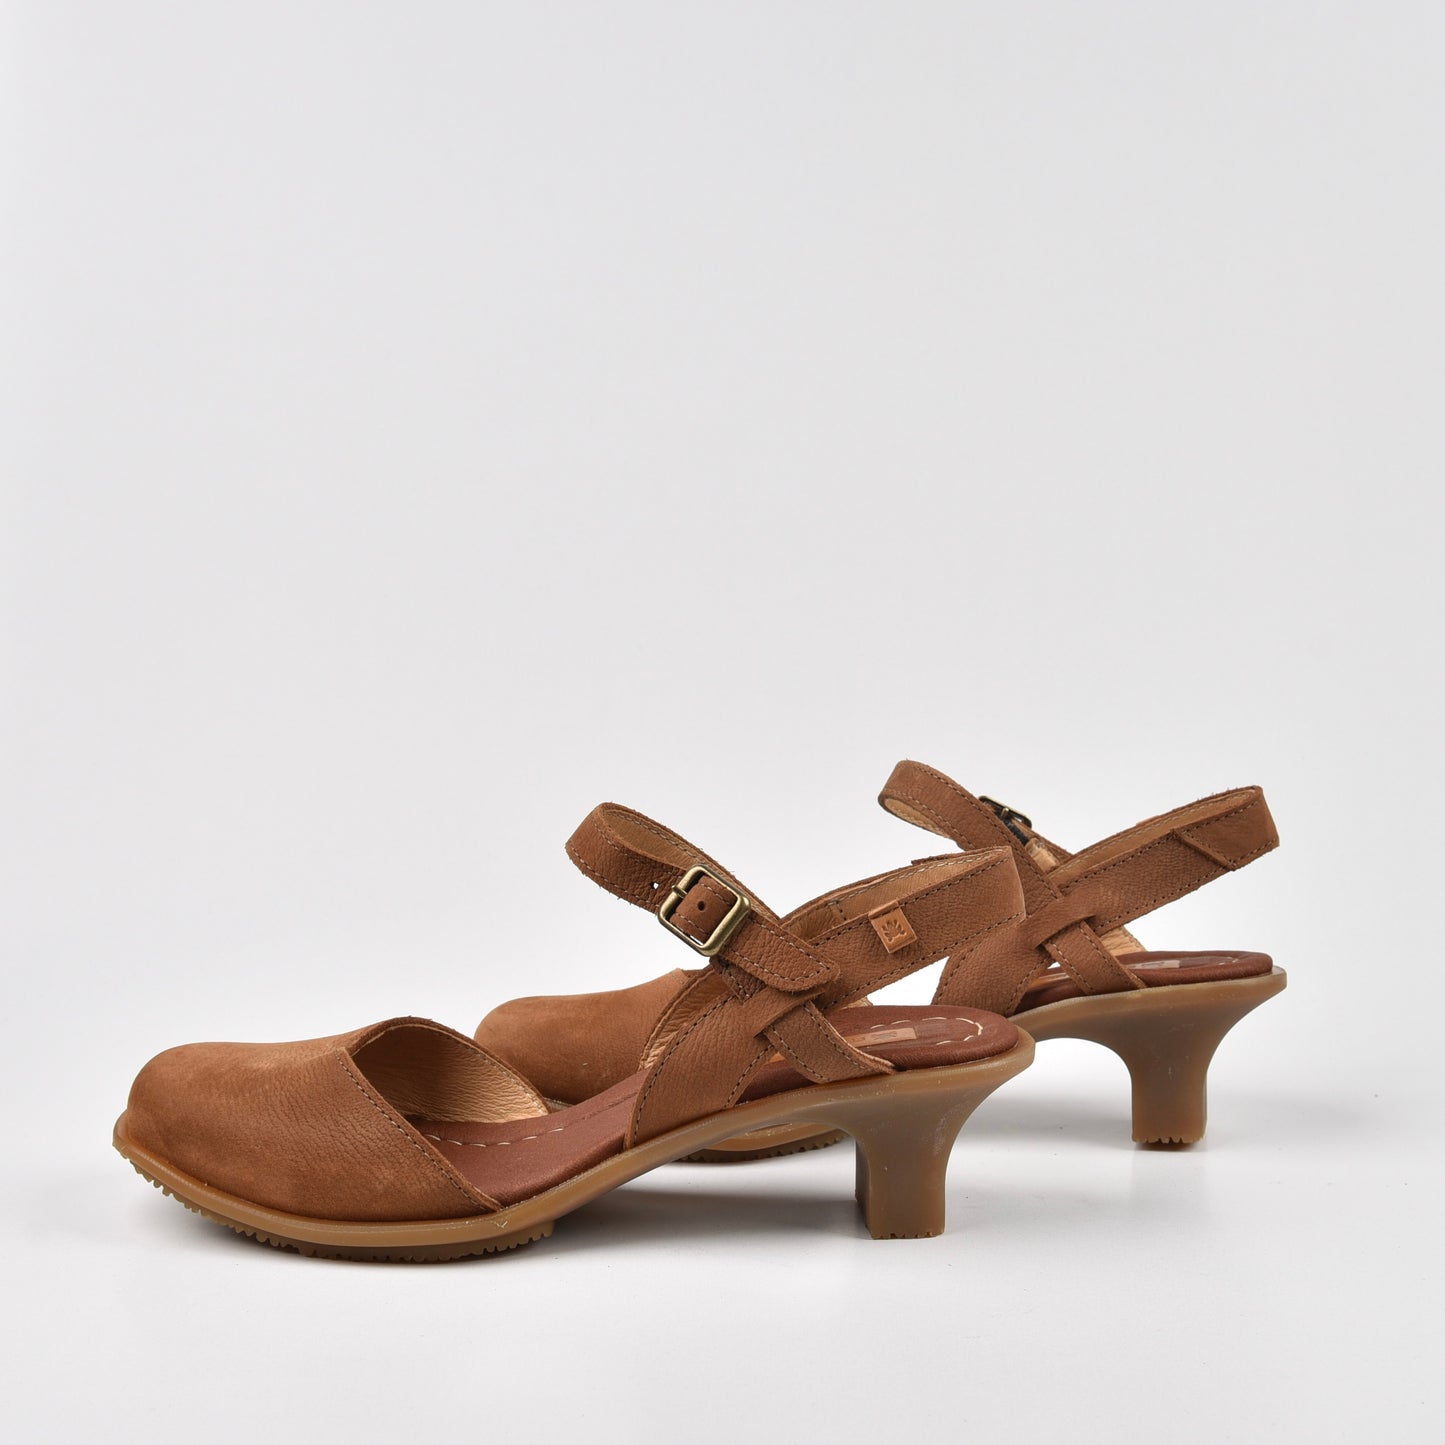 Art Spanish Strap Medium Heel Sandal for Women in Camel.